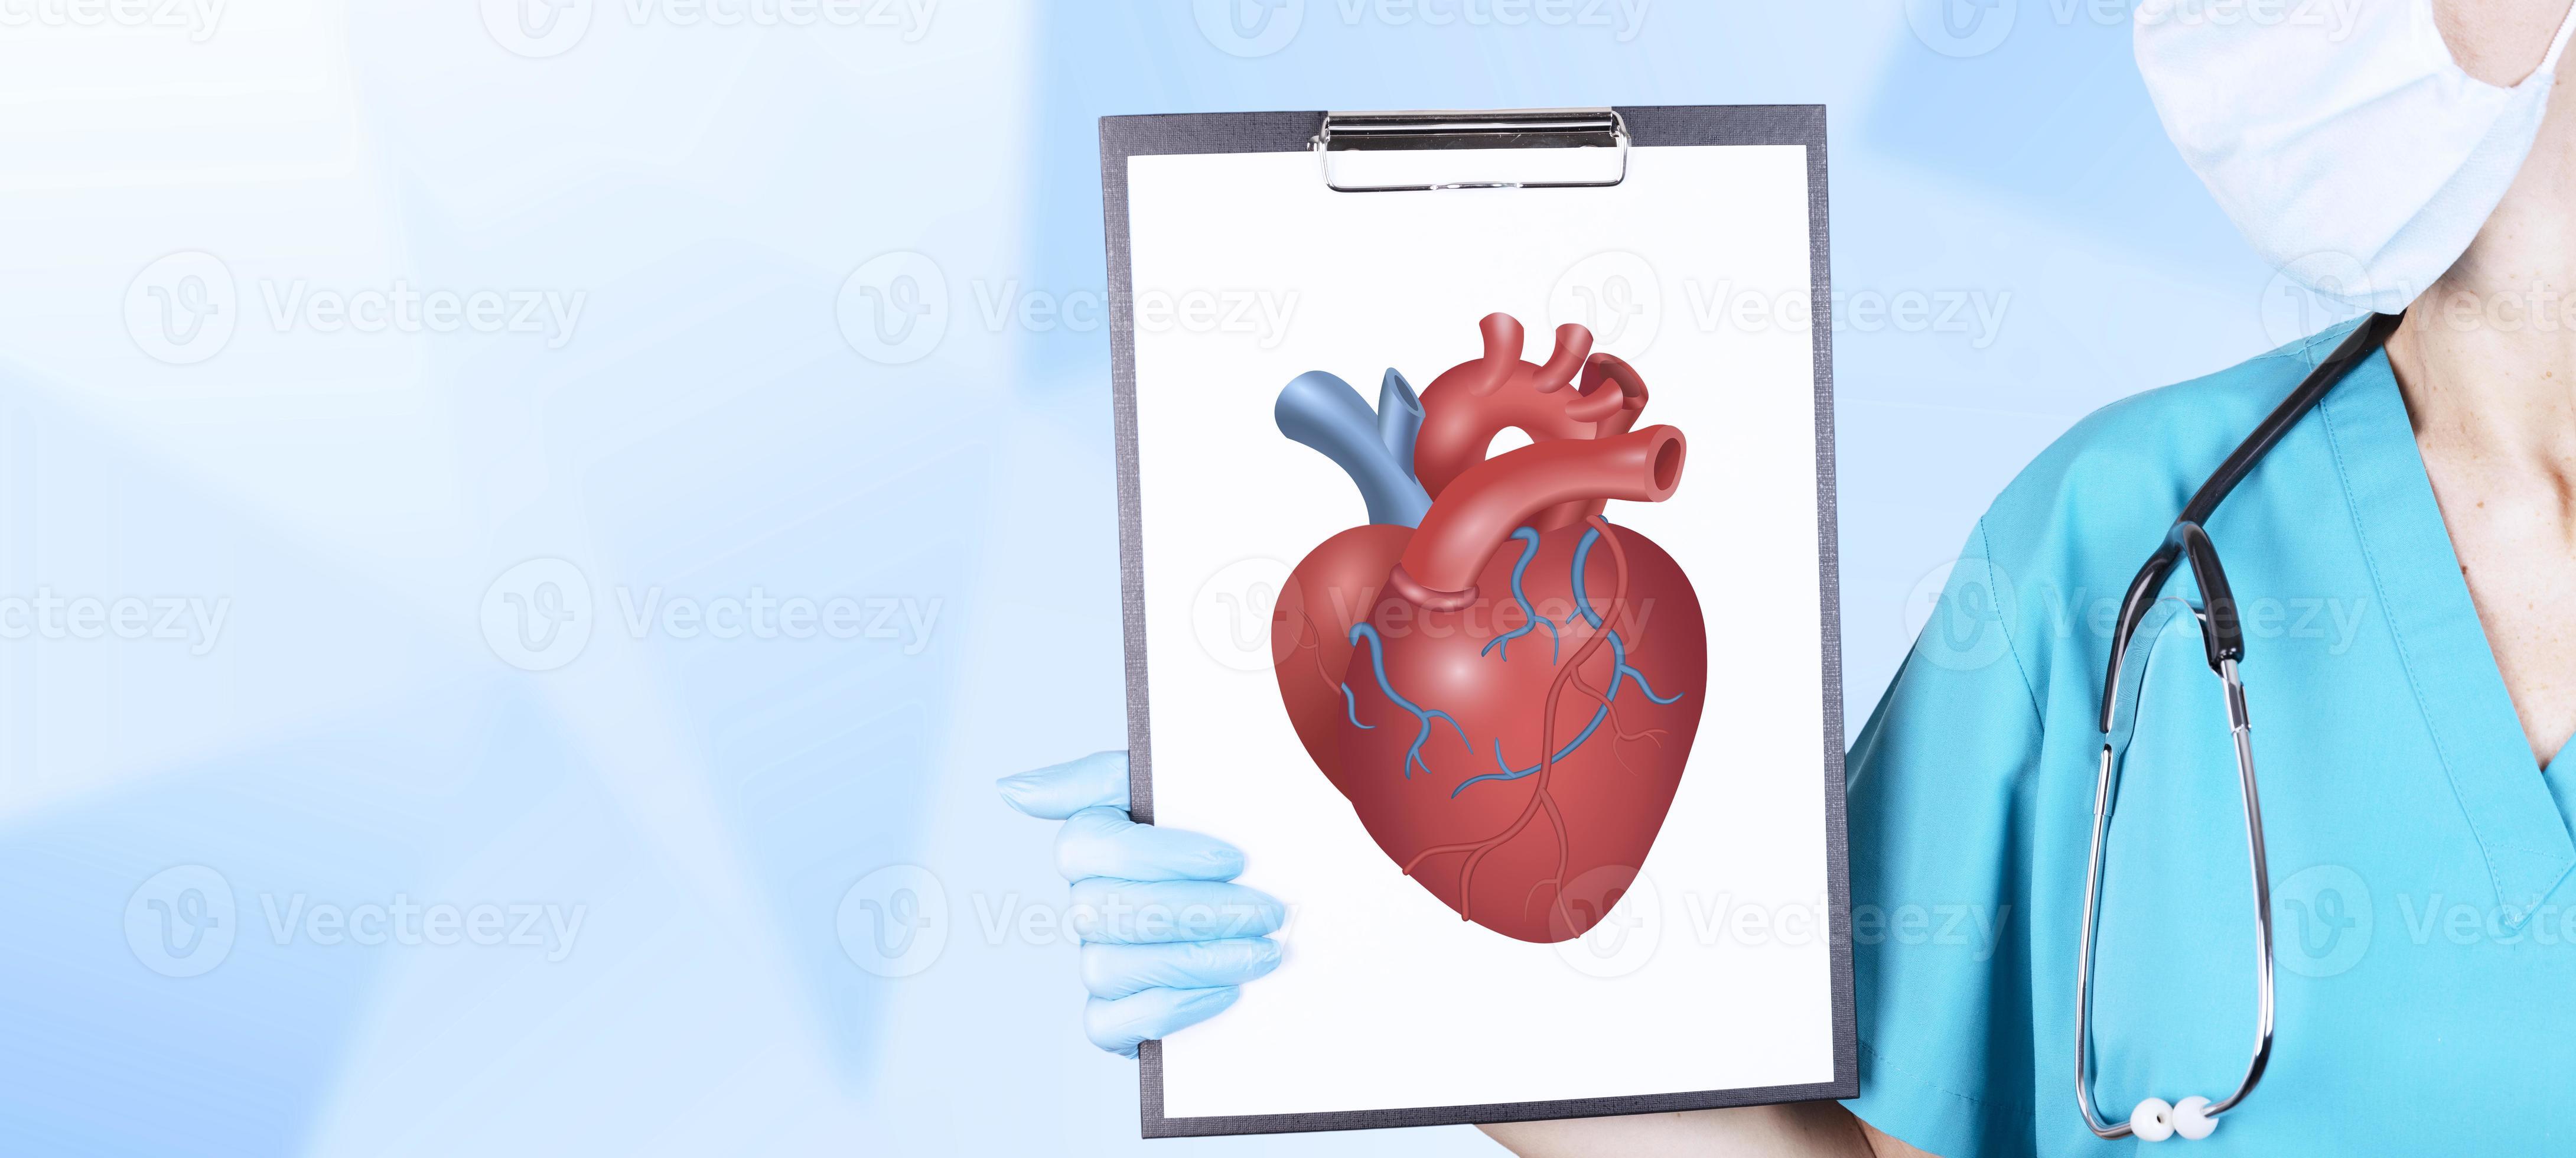 hierro Implementar Skalk la mano de un cardiólogo con ropa médica y un estetoscopio sostiene una  tableta con un corazón rojo, voluminoso y realista sobre un fondo claro.  concepto de cardiología. copie el espacio 8136469